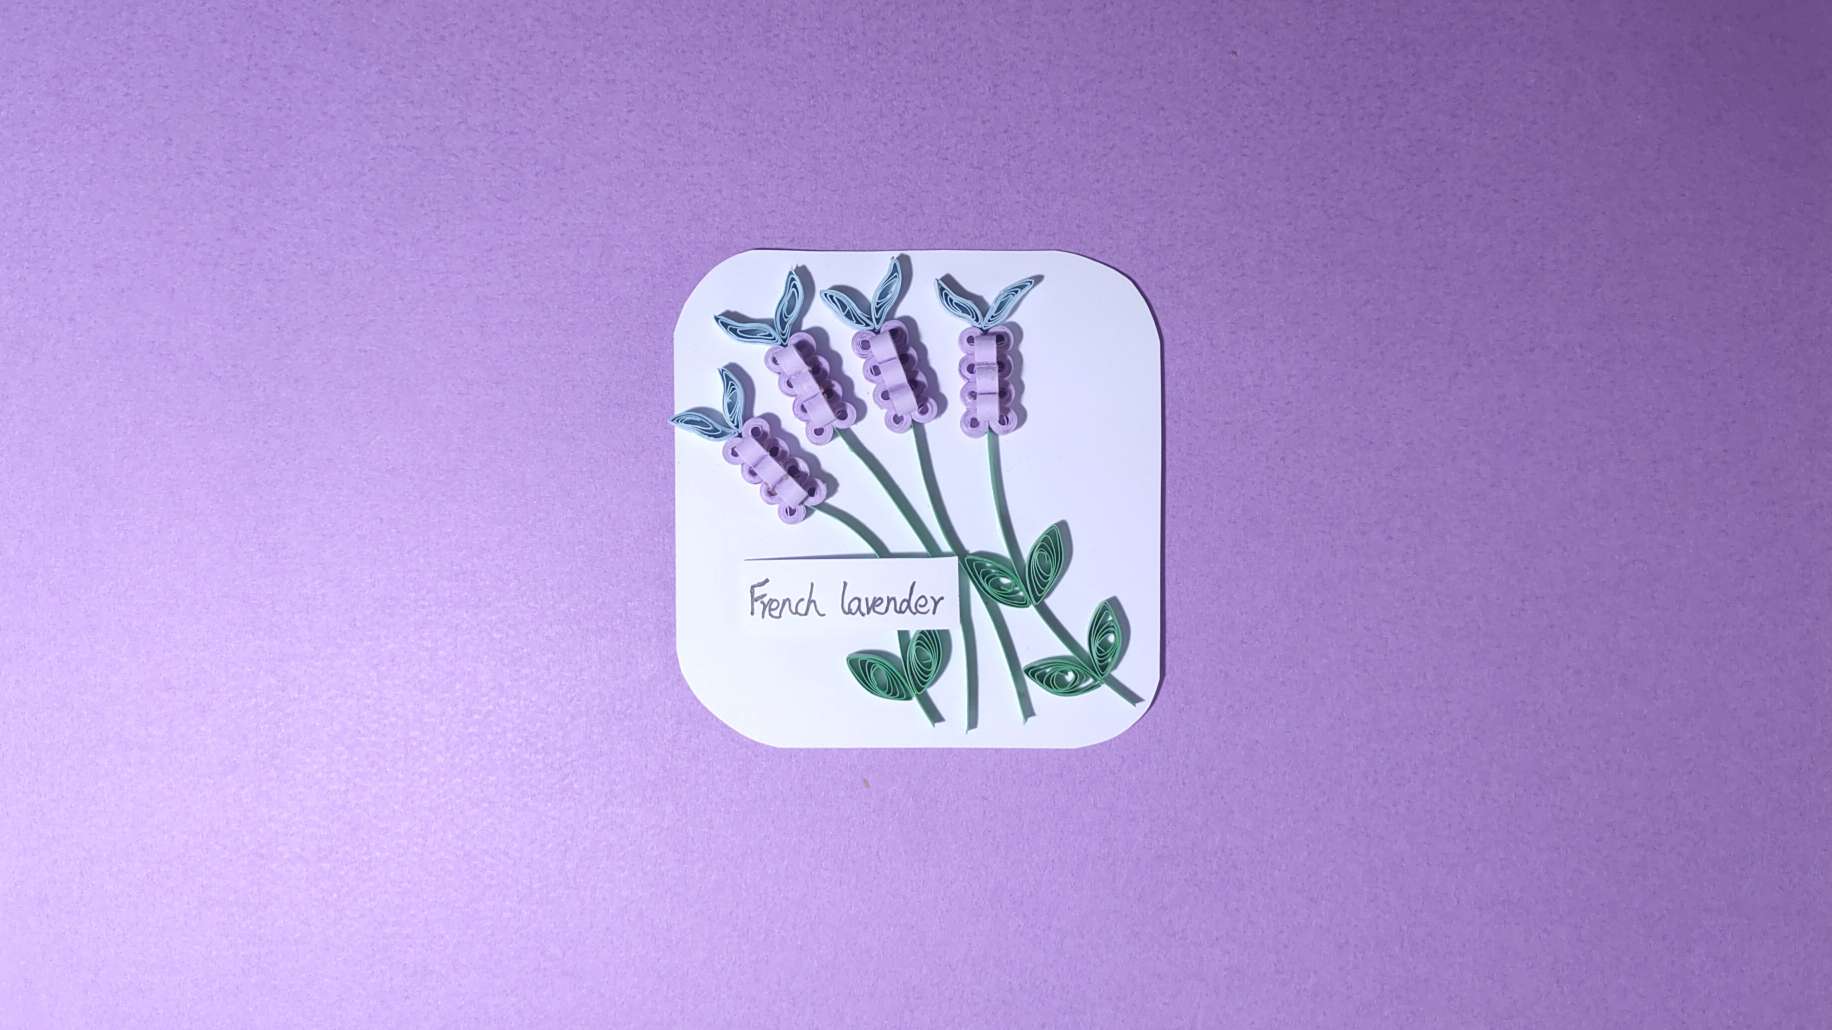 薰衣草French lavender
             🍀🍀🍎🎂🍀🍀🌈
	
     薰衣草的花语是等待爱情。一直被人视为纯洁、清净、感恩与和平的象征，有着婚姻幸福的寓意。🌈
      衍纸可以根据喜好更换颜色调整大小哦，做一朵属于自己的薰衣草吧～💕